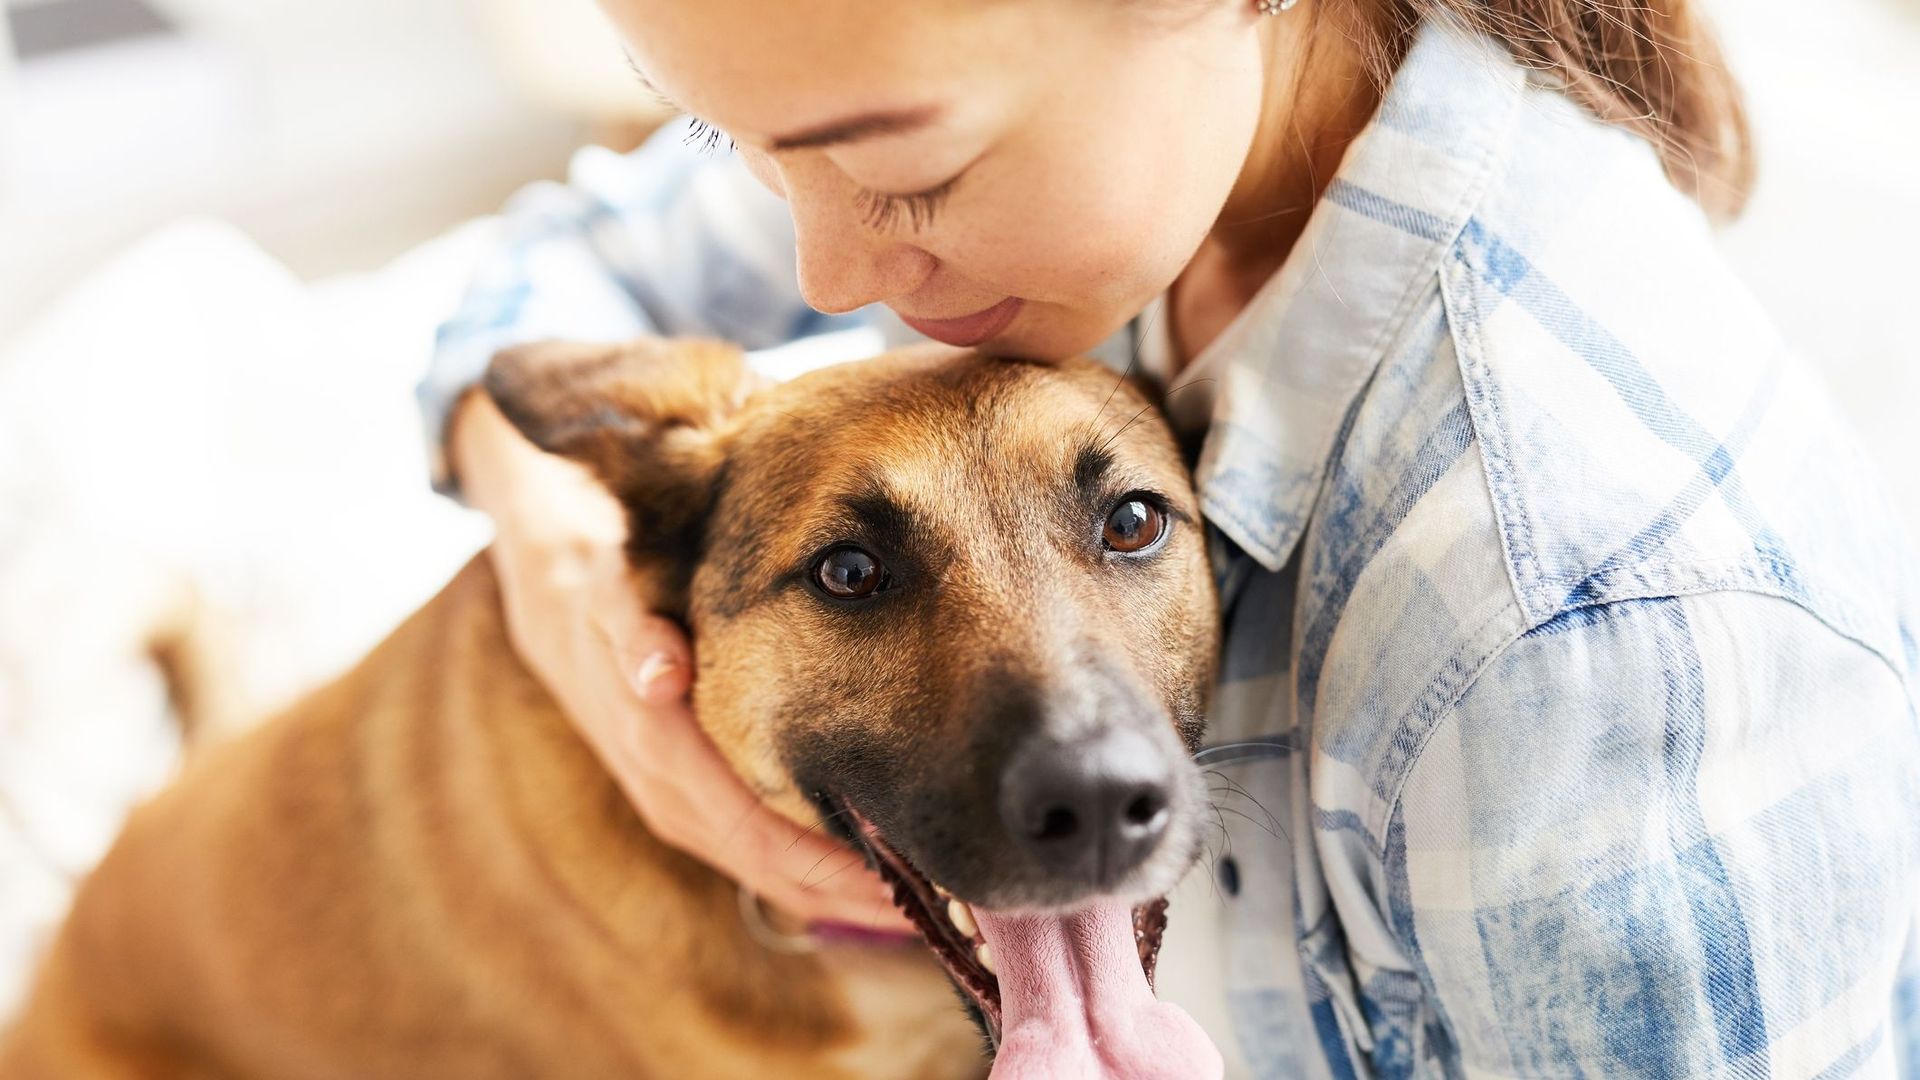 Les chiens veulent sauver leurs propriétaires quand ils ont un problème, selon une étude.